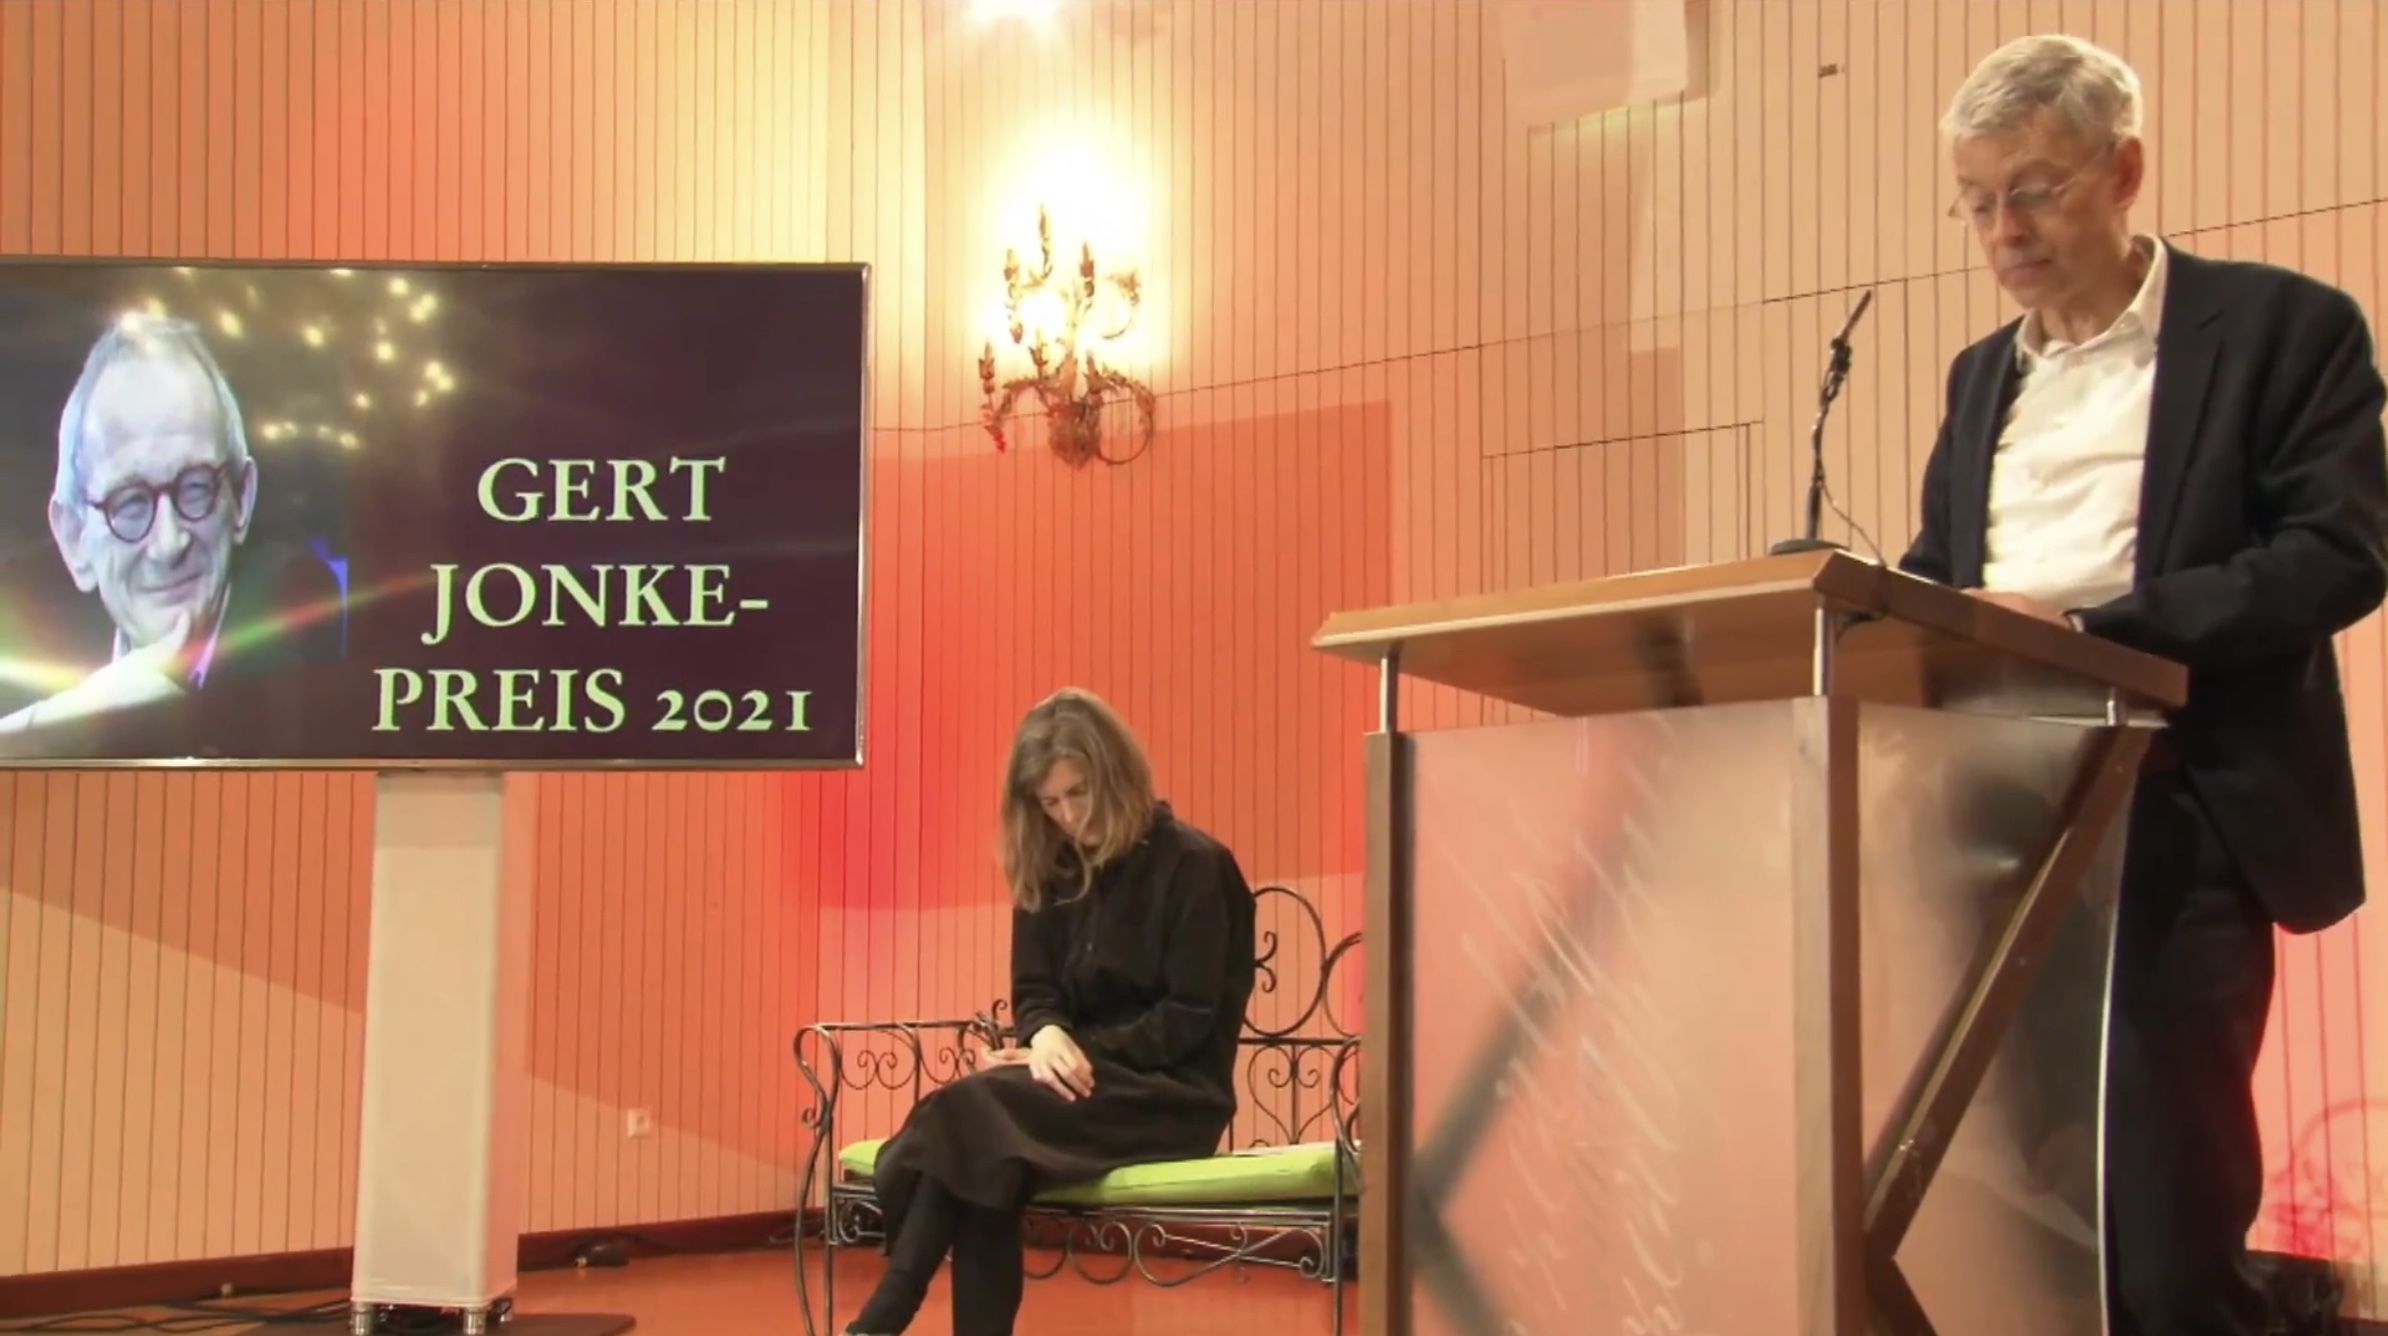 Livestream aus dem Mozartsaal des Konzerthaus Klagenfurt mit dem Gert Jonke-Preis 2021.